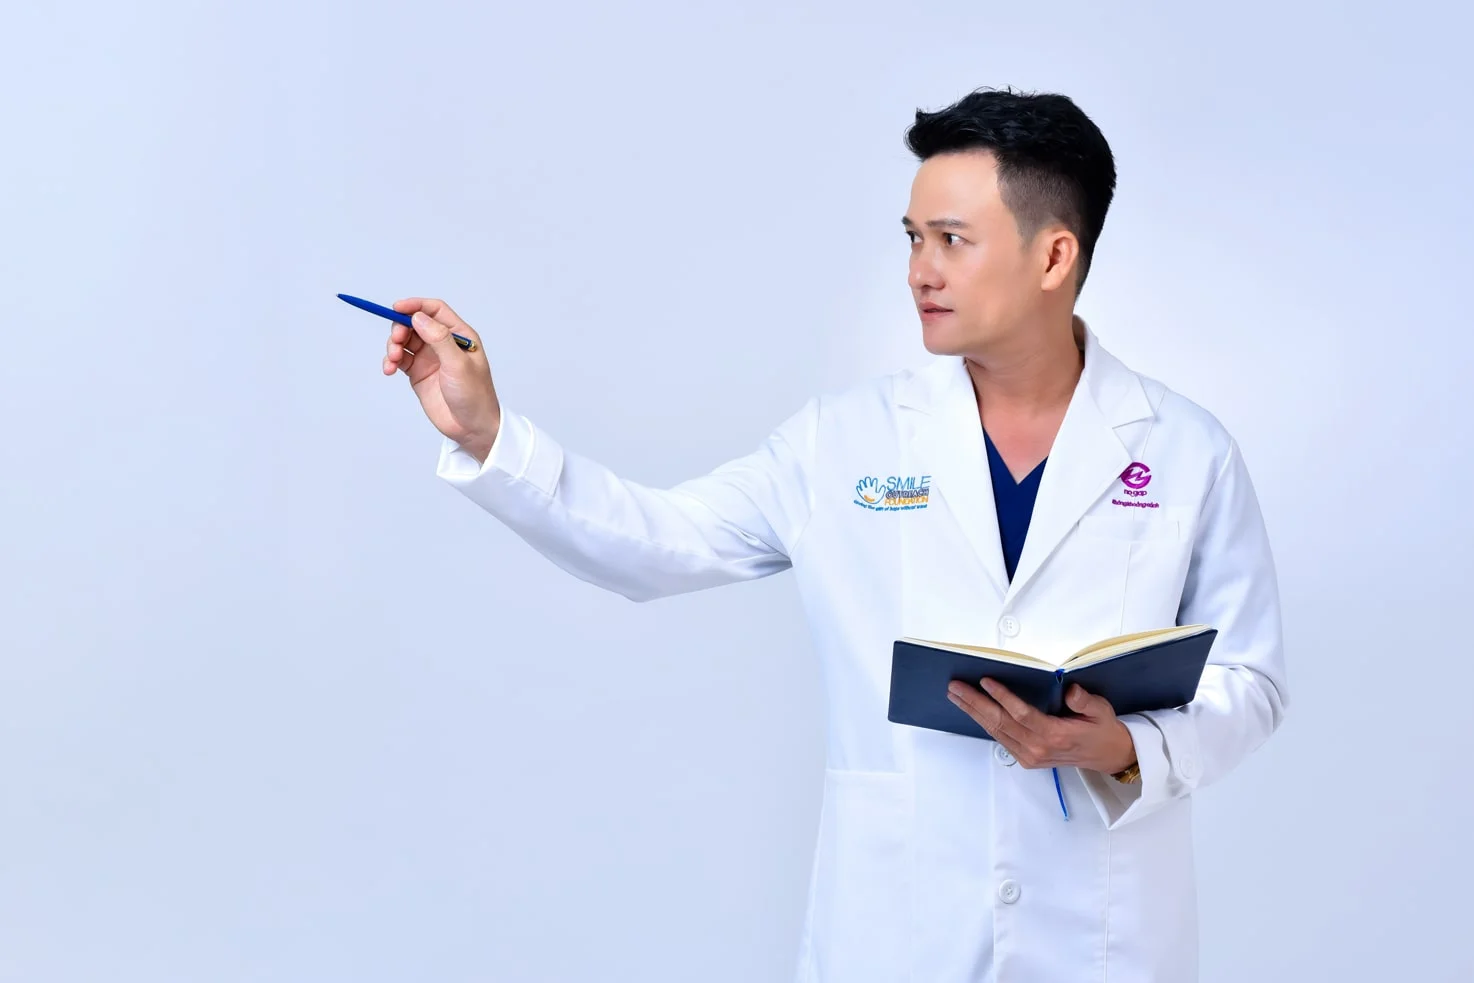 Anh bac si 4 min - Concept chụp ảnh bác sĩ với áo Blouse đẹp chỉnh chu - HThao Studio